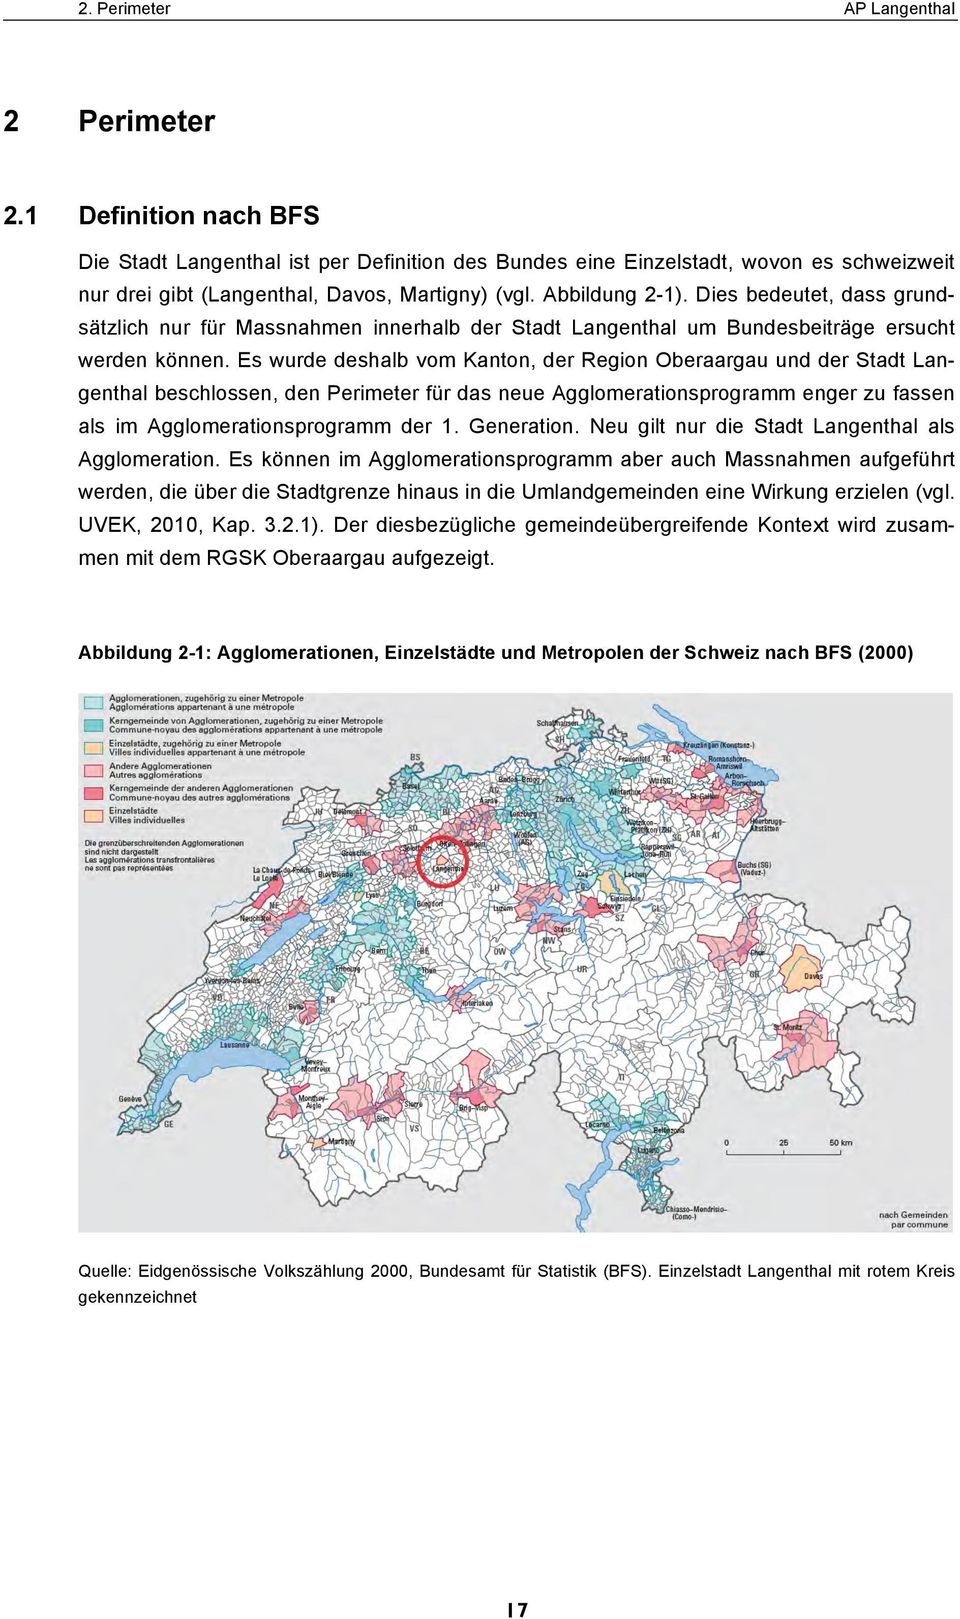 Dies bedeutet, dass grundsätzlich nur für Massnahmen innerhalb der Stadt Langenthal um Bundesbeiträge ersucht werden können.